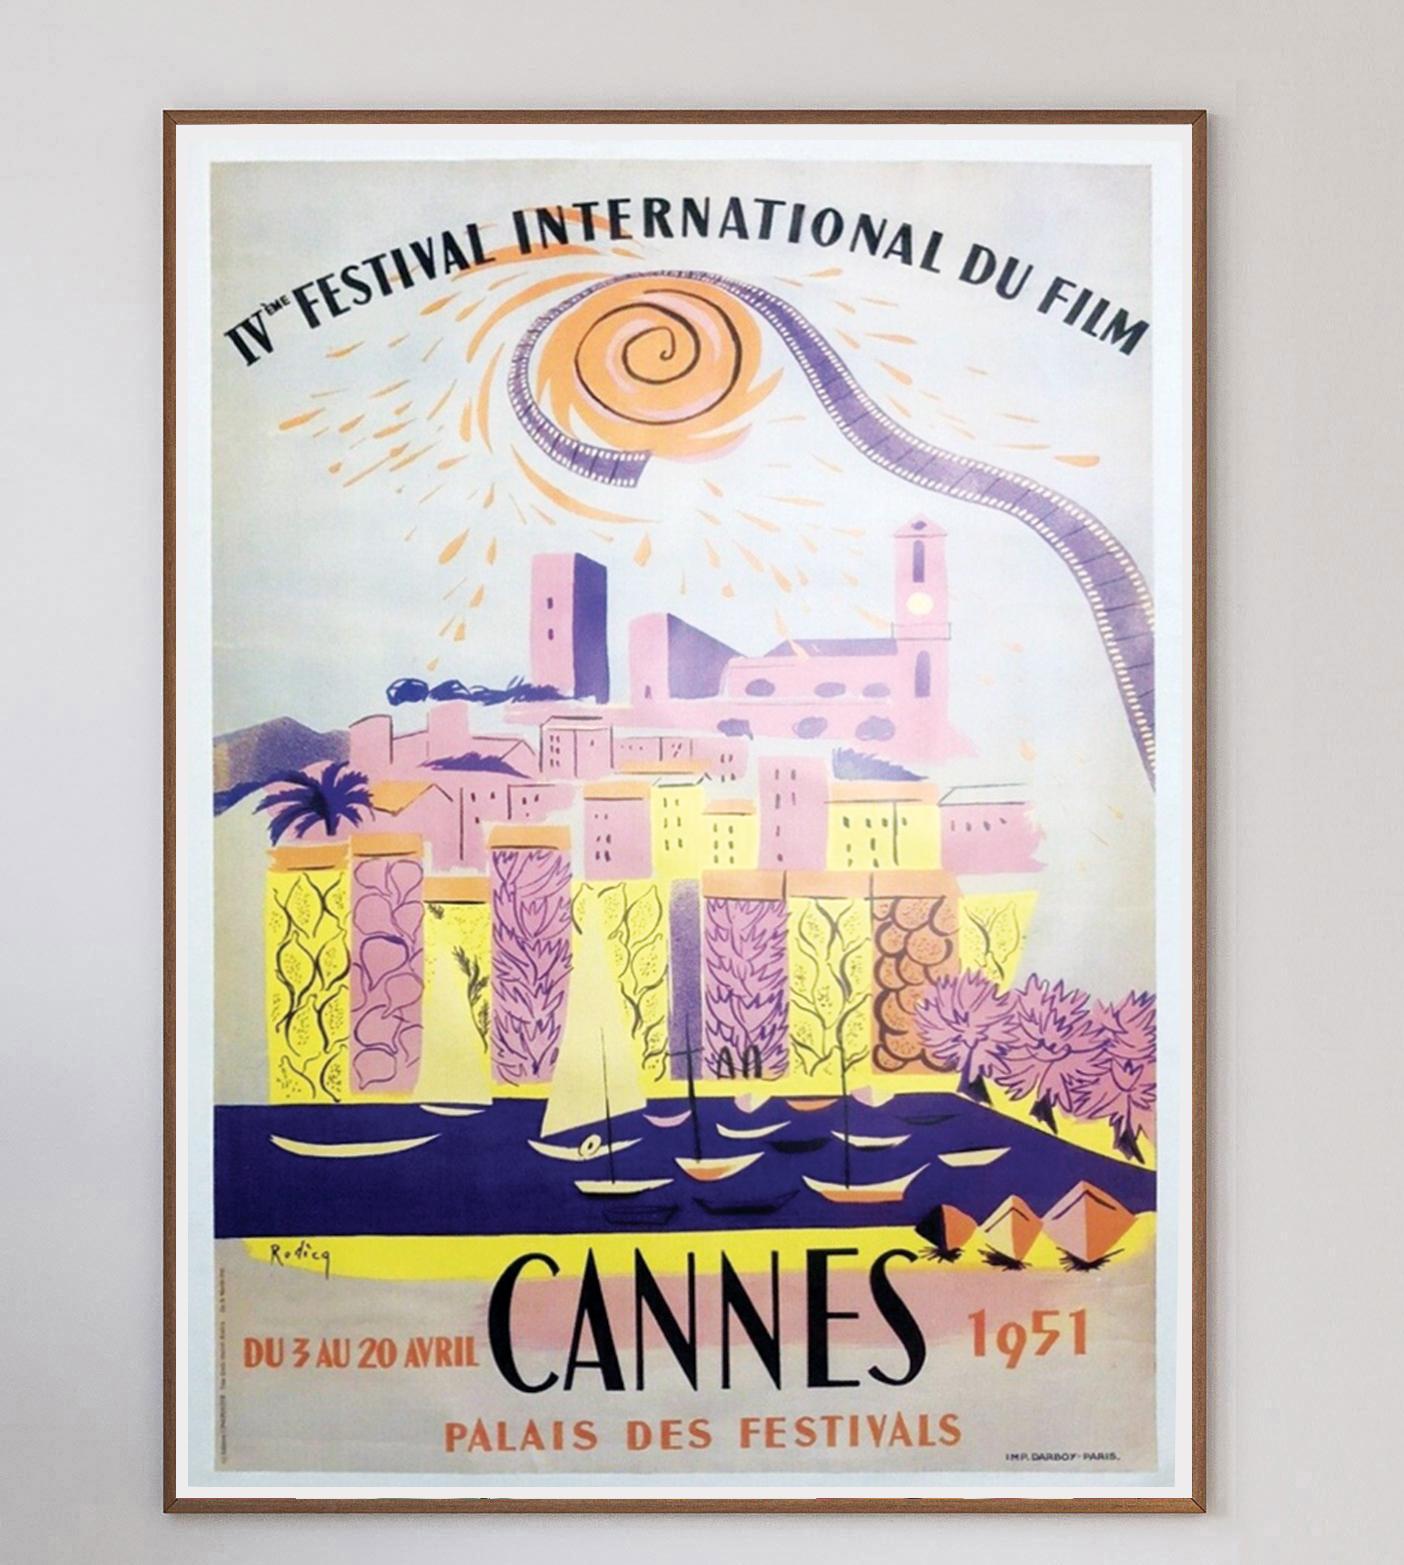 Dieses Plakat für das 4. Internationale Filmfestival von Cannes im Jahr 1951, das vom 3. bis 20. April in Cannes, Frankreich, stattfand. Das schöne Design ist in leuchtenden Farben gehalten und wurde von A.M. entworfen. Rodicq.

Dies war das erste